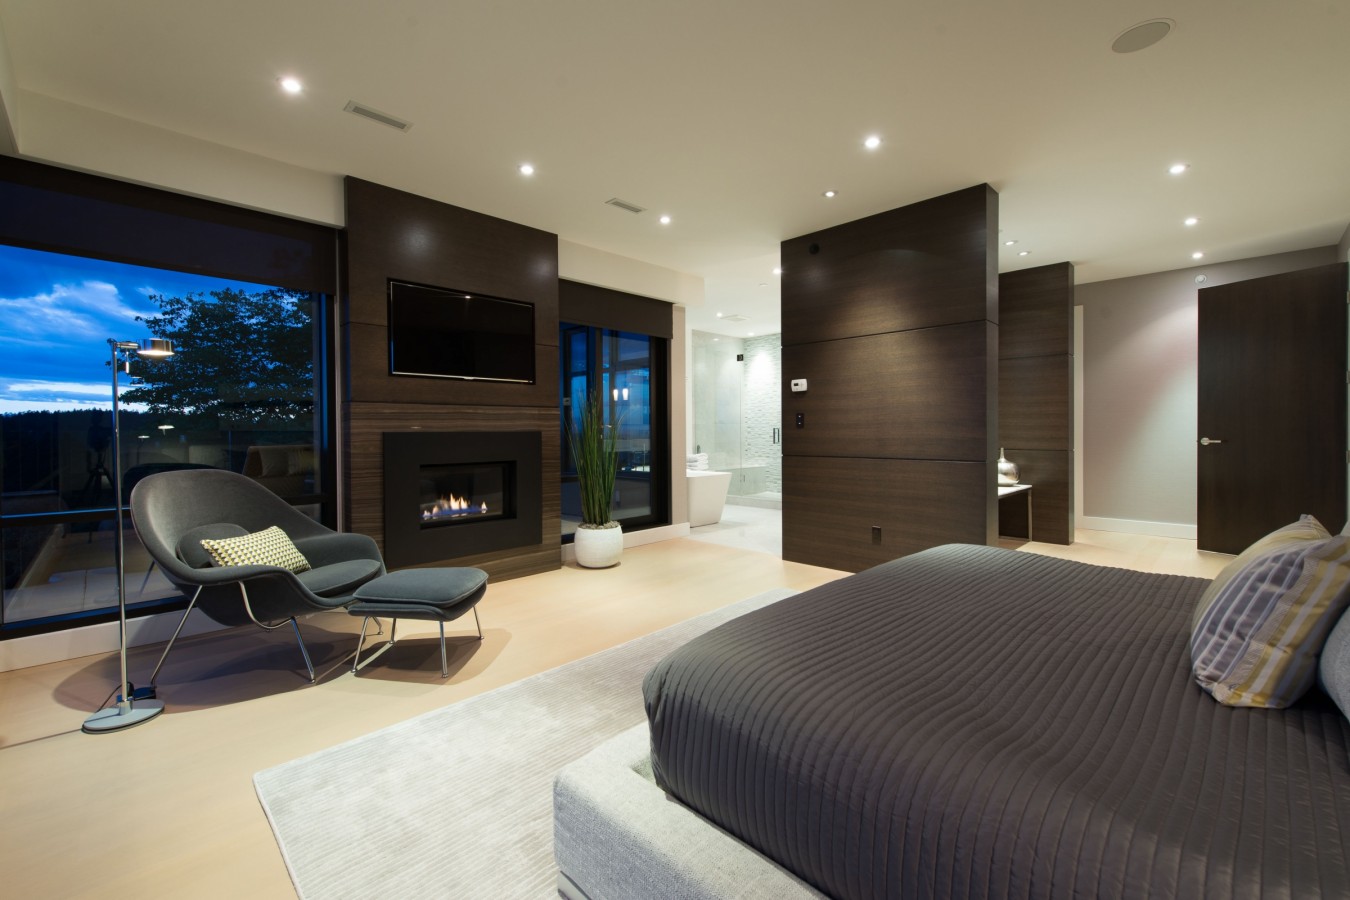 12 Best Modern House Interior Ideas